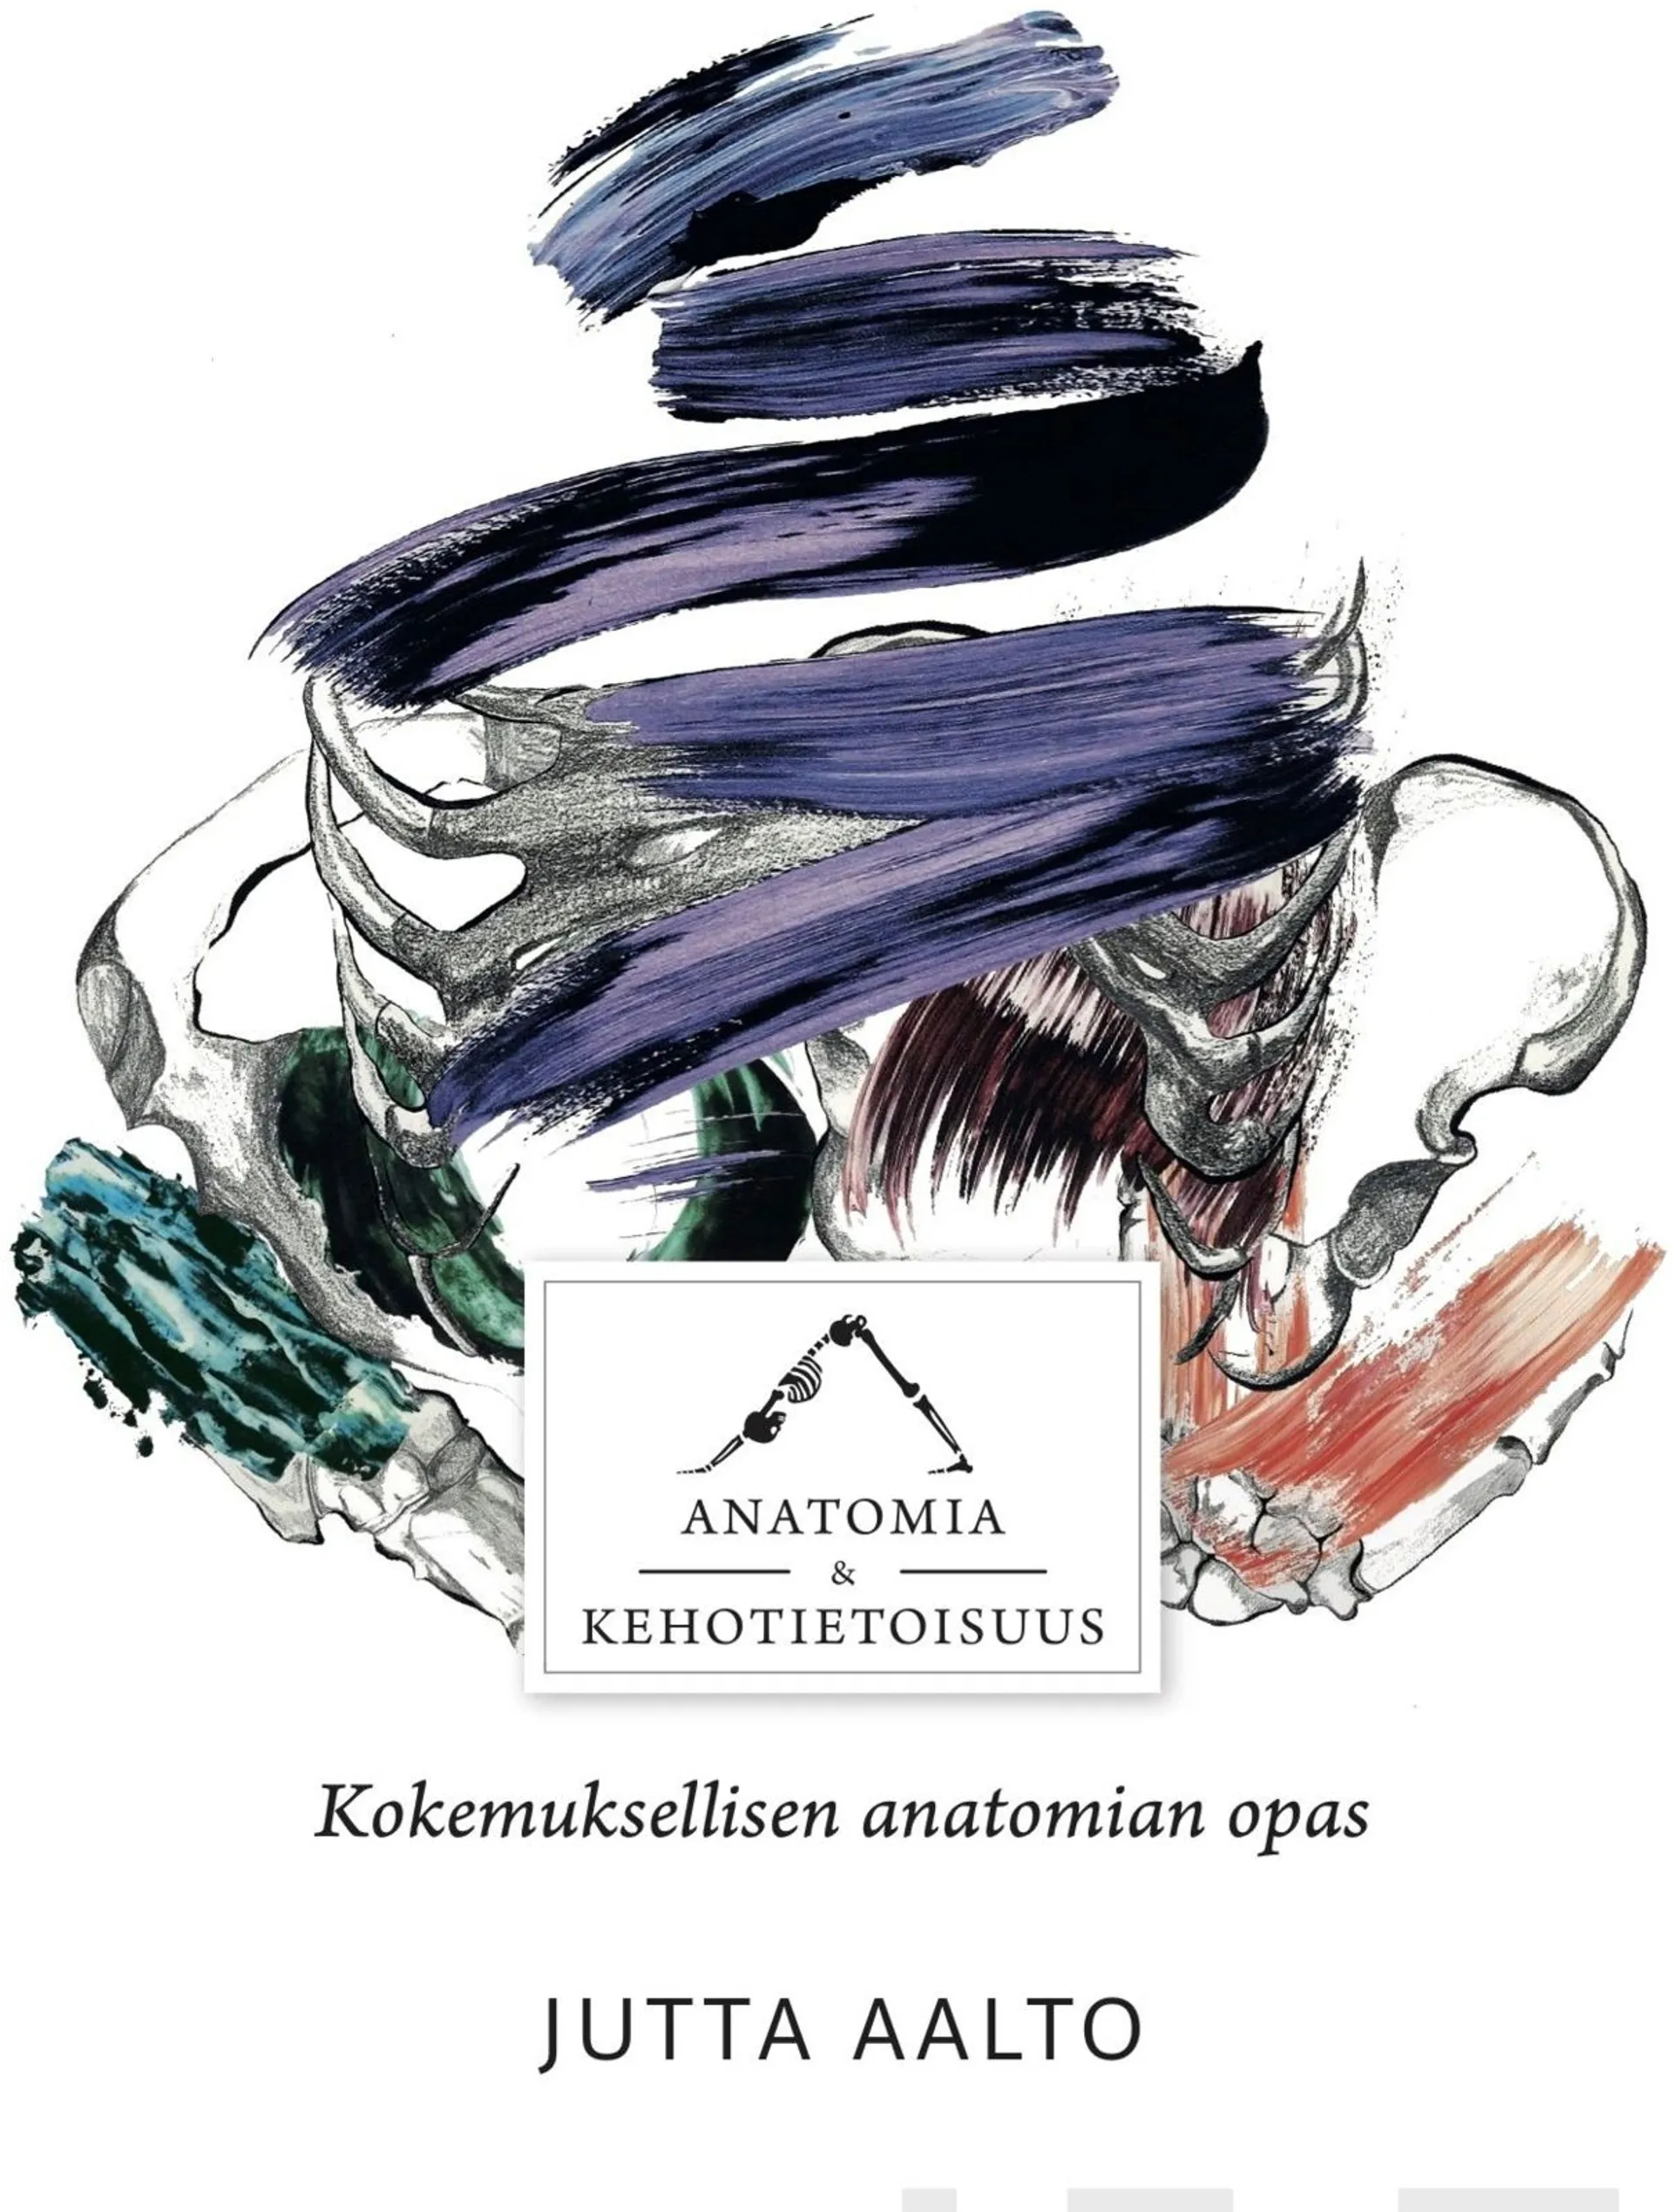 Aalto, Anatomia & kehotietoisuus - Kokemuksellisen anatomian opas